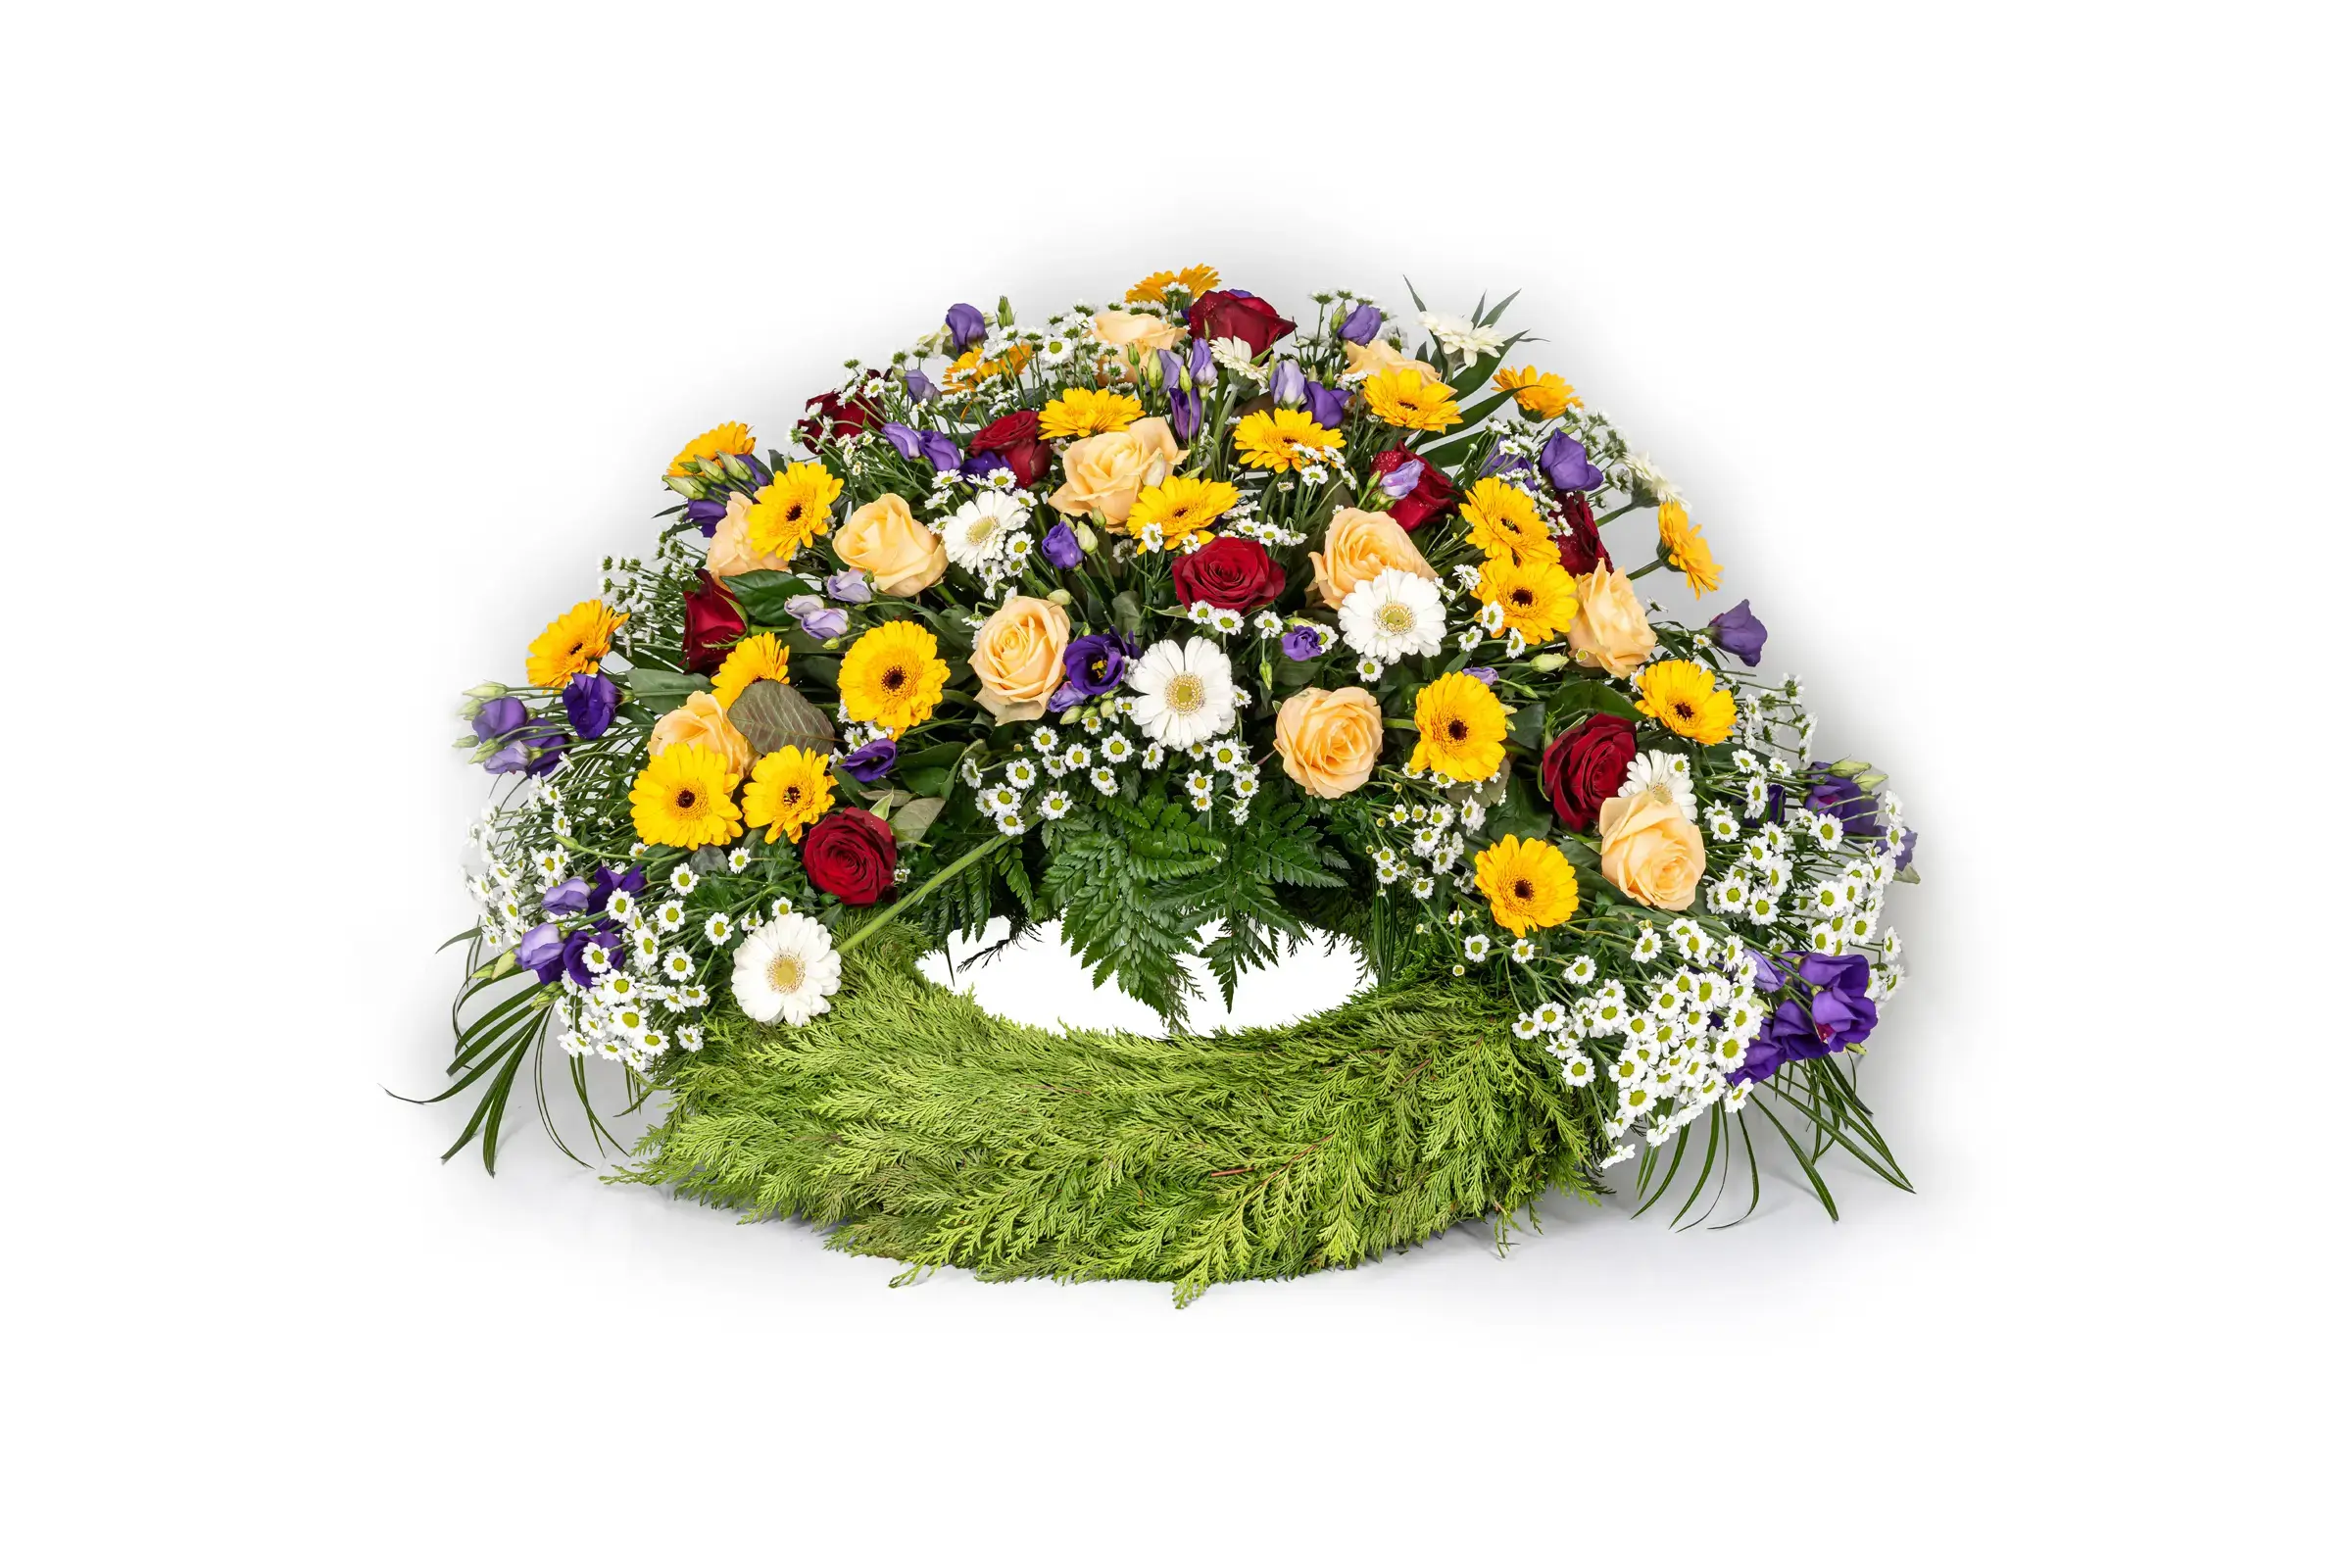 Trauerfloristik | Kranz | Unterschiedliche Blumen